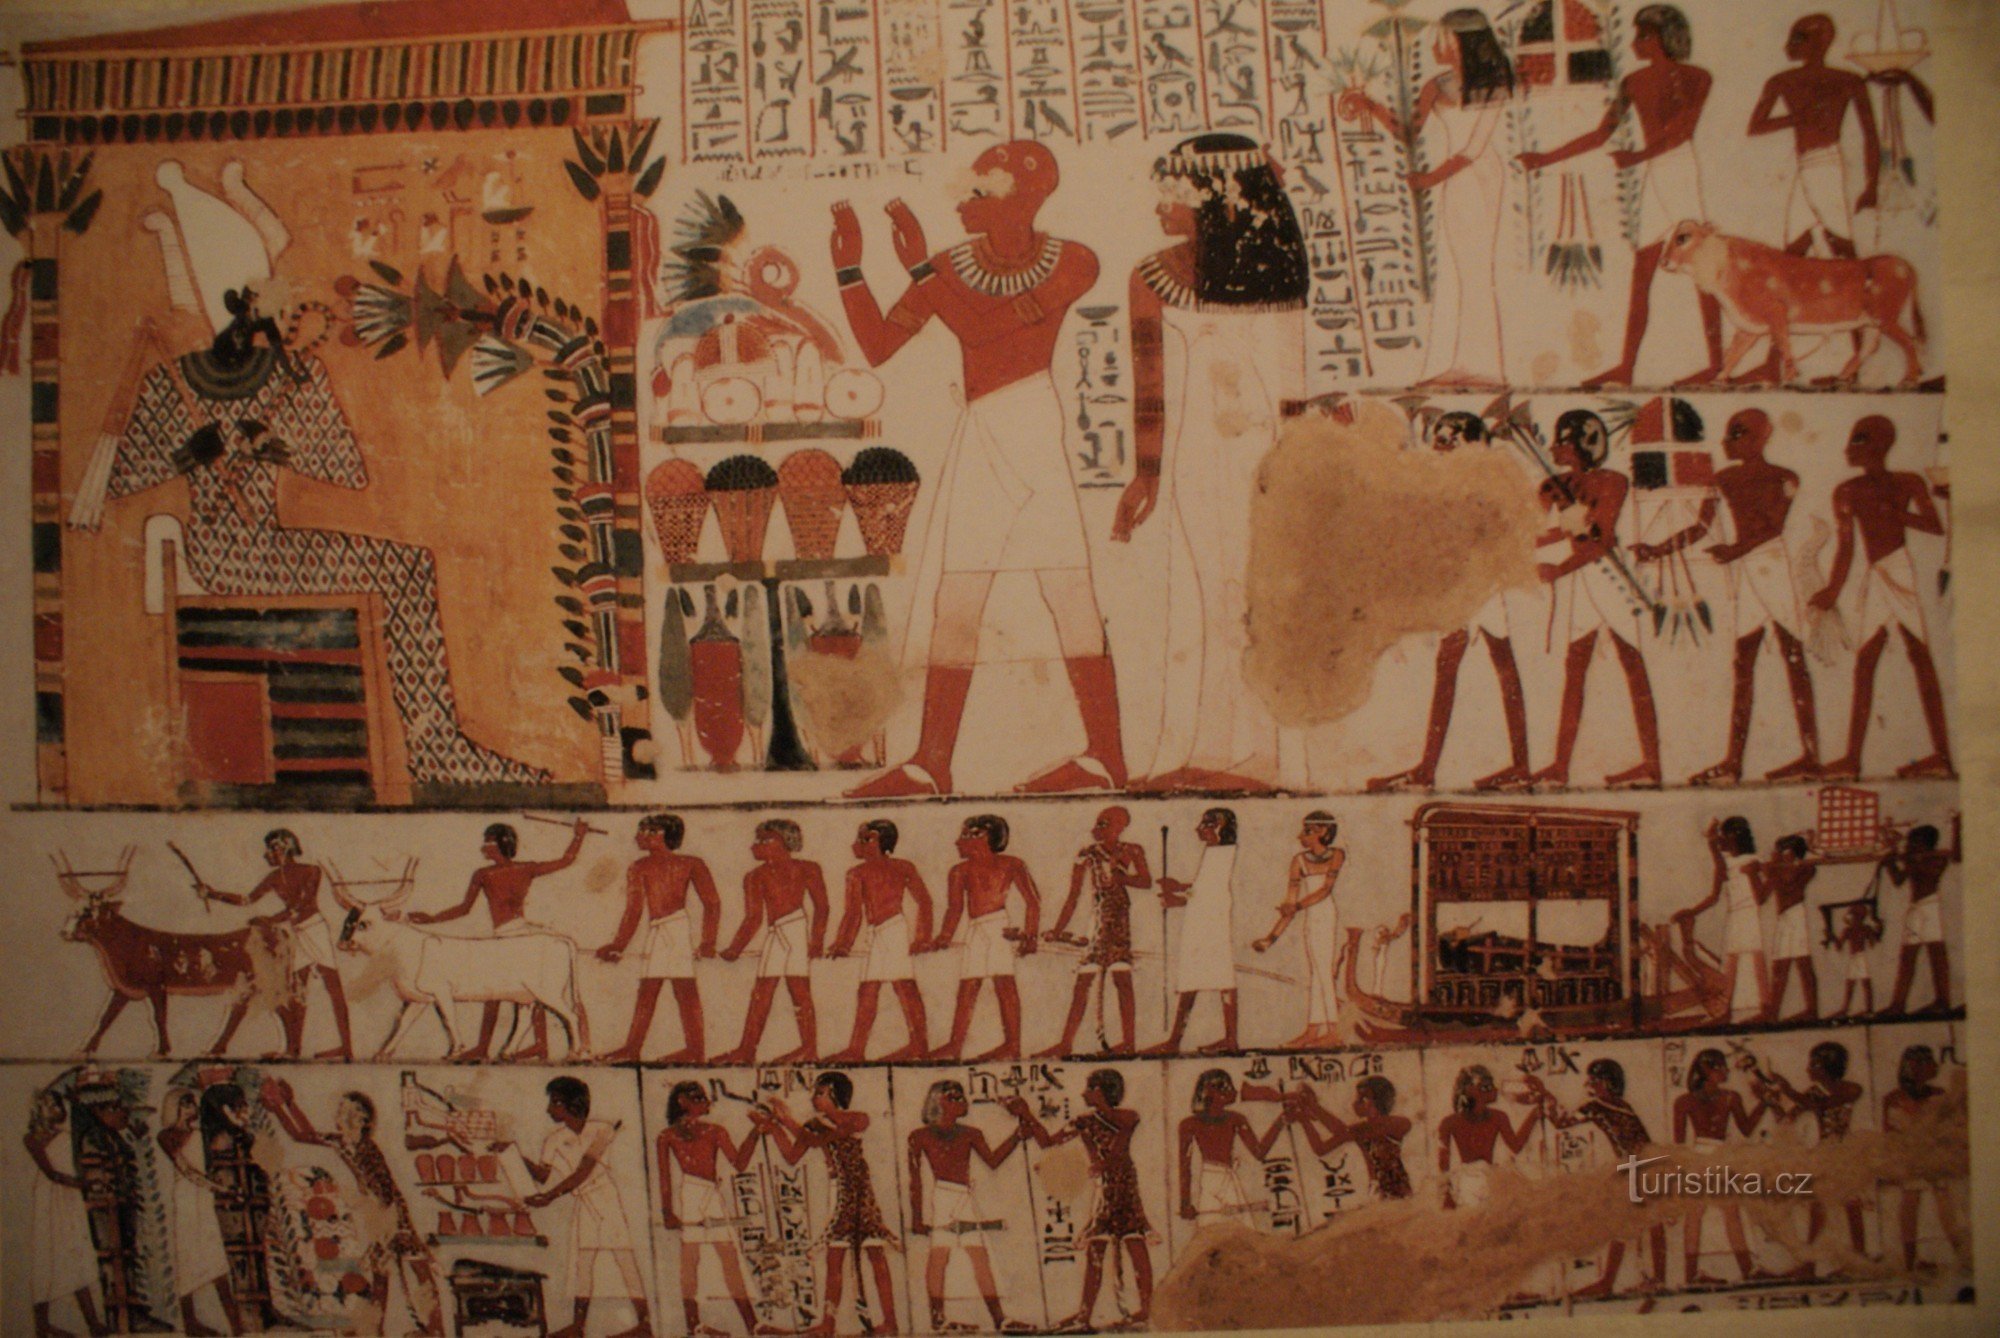 Du behøver ikke at tage hele vejen til Egypten for Tutankhamon eller hans grav og skatte (Brno 2009)